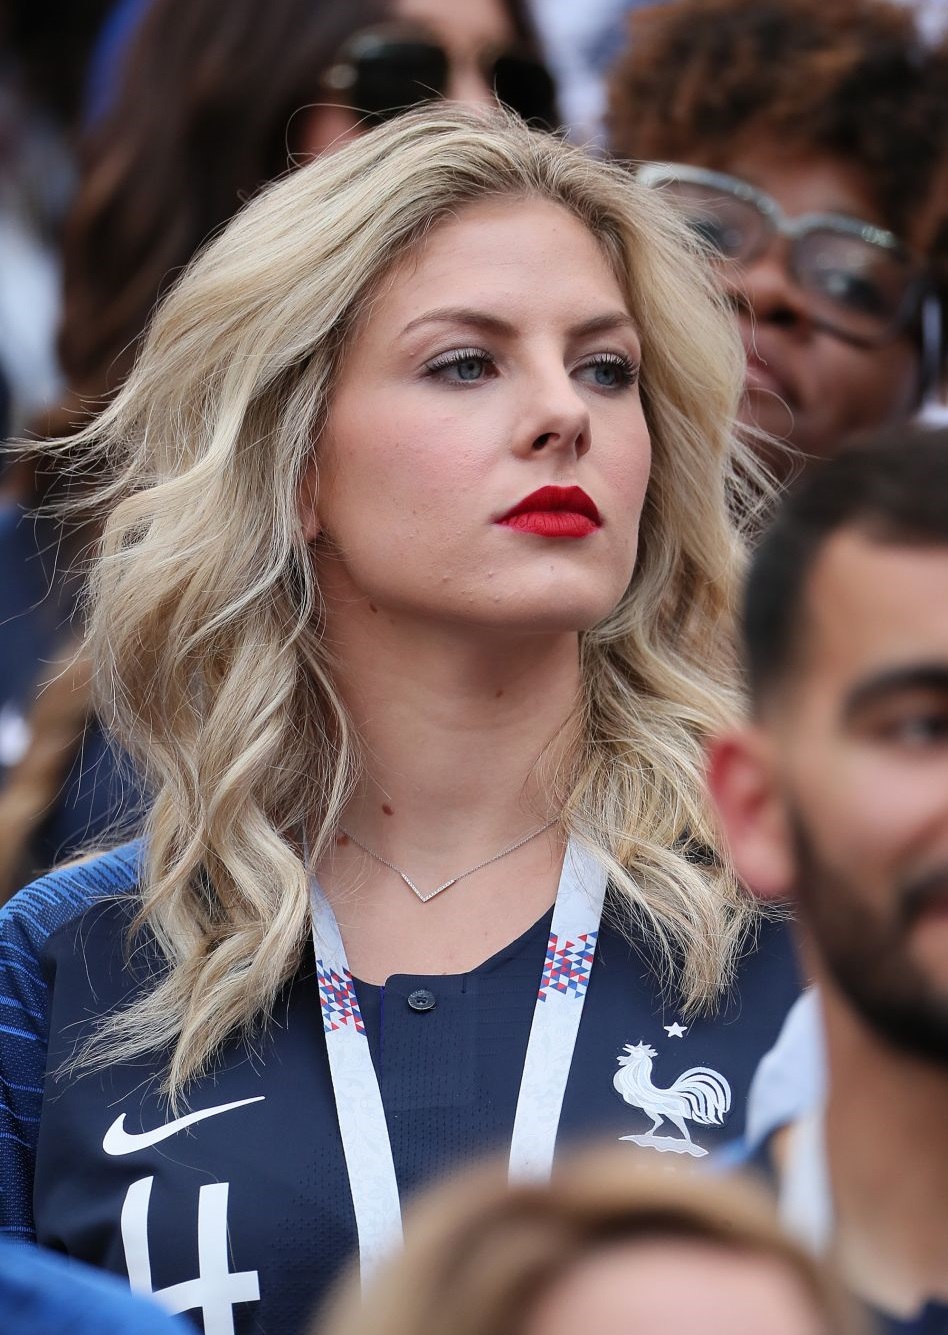 Femmes de footballeurs : notre top 20 des plus belles femmes de joueurs